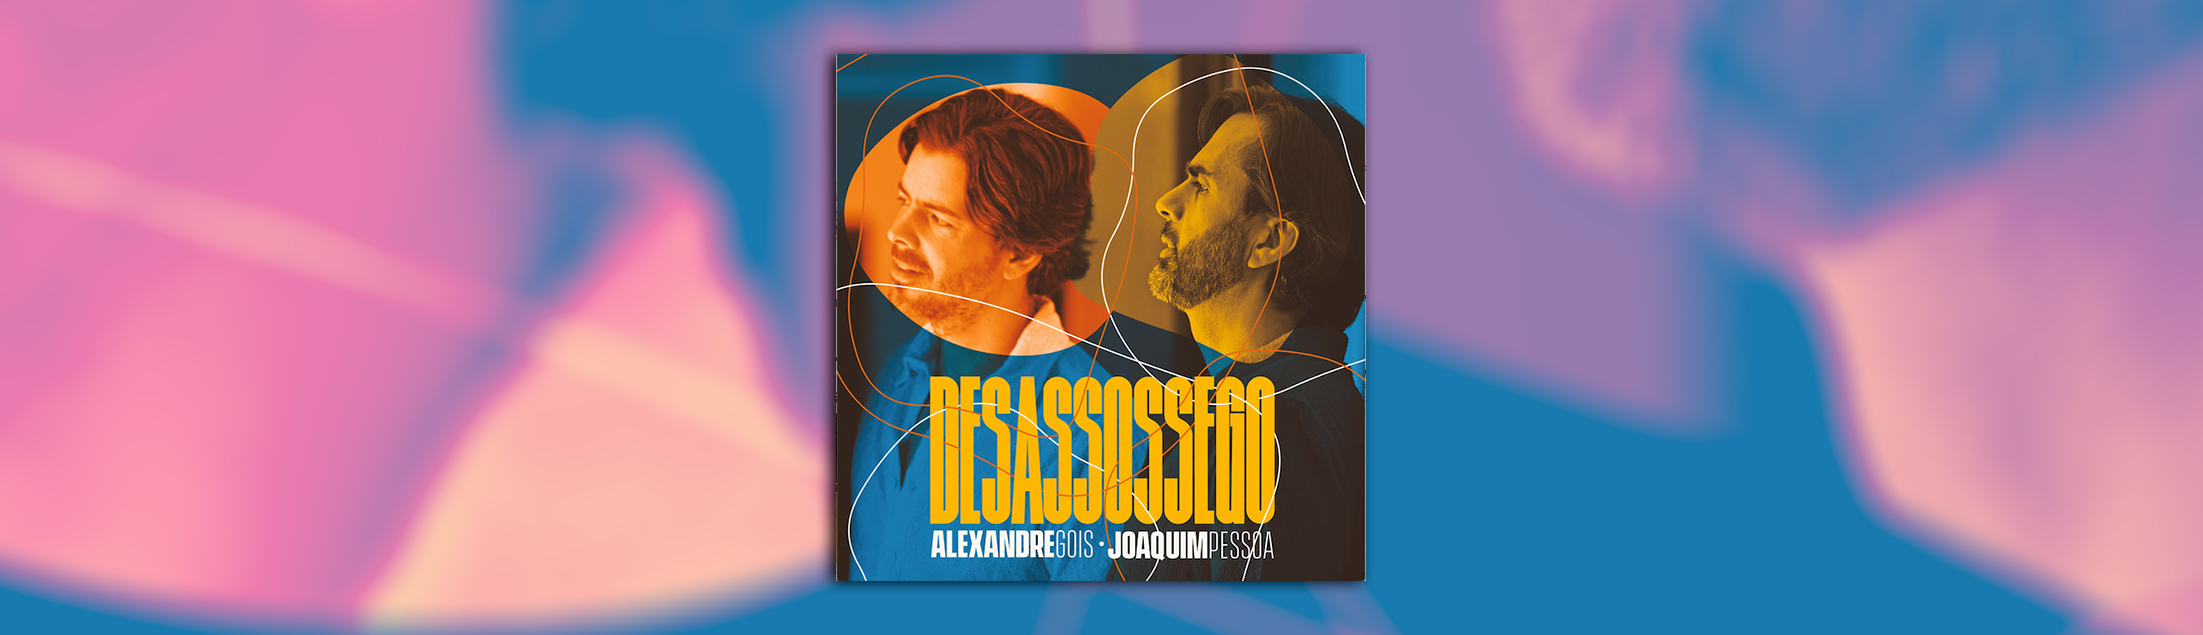 Álbum de Alexandre Gois e Joaquim Pessoa ganha as plataformas digitais